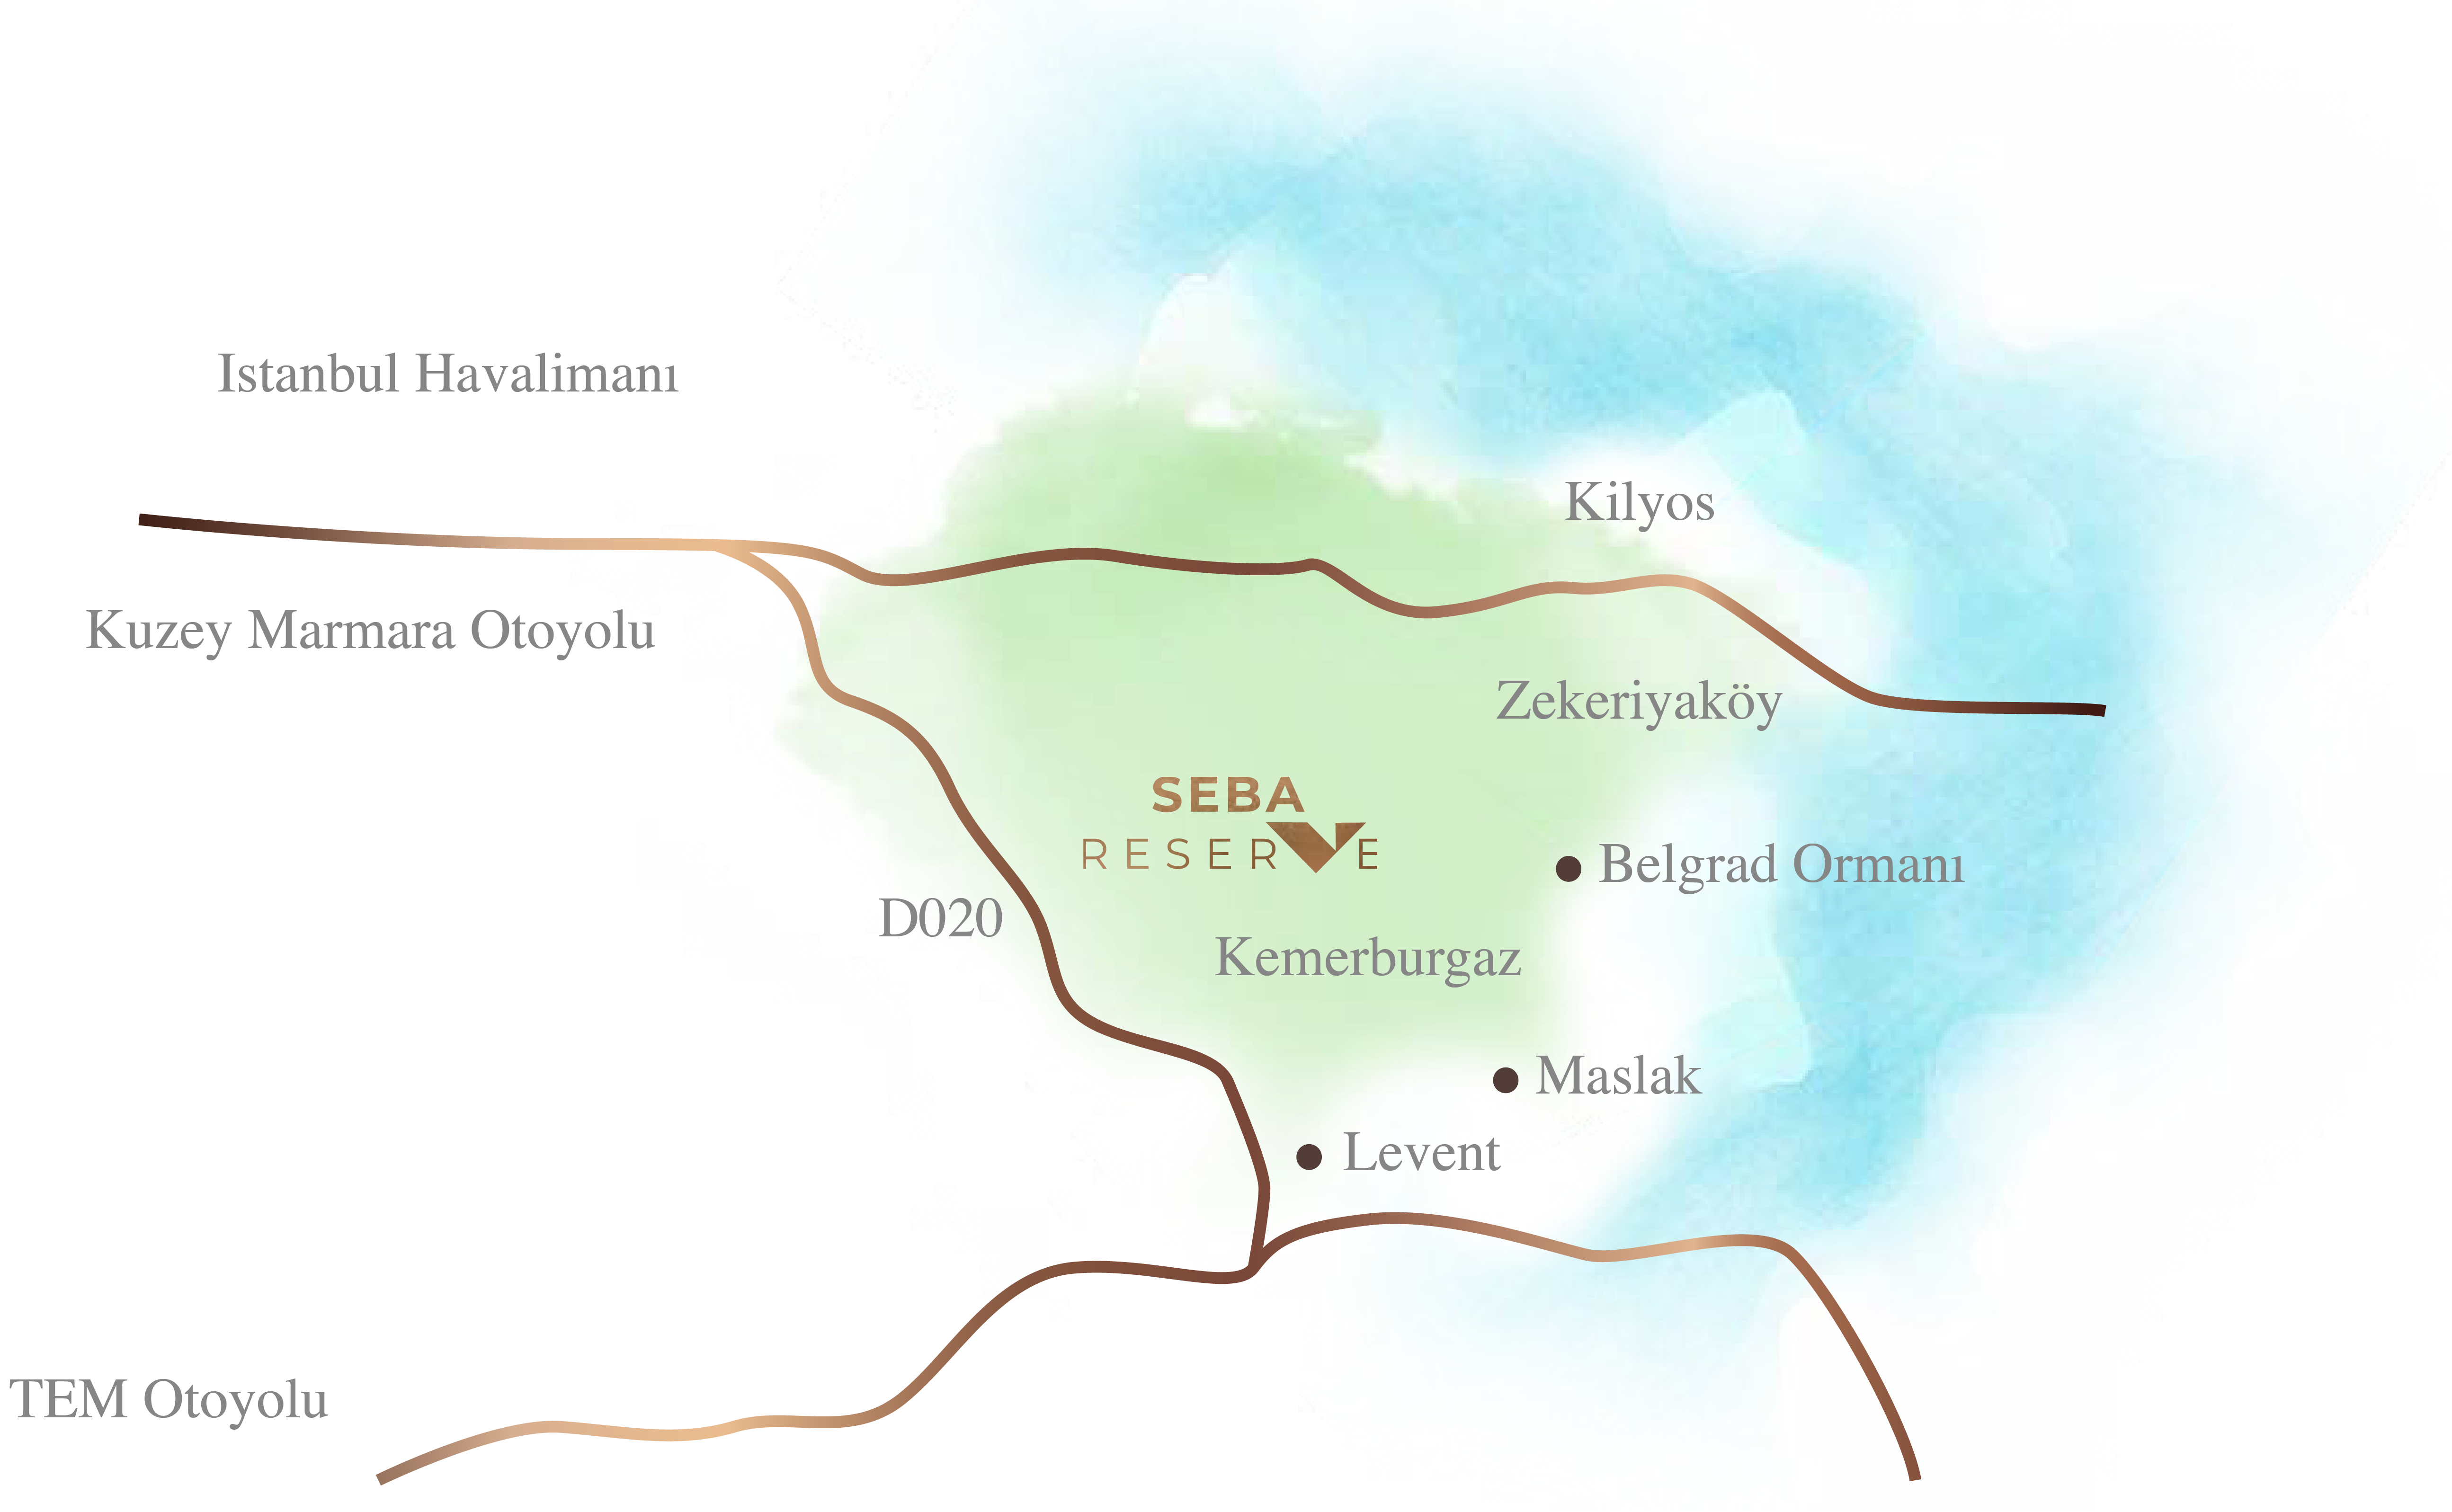 Seba Reserve Lokasyon